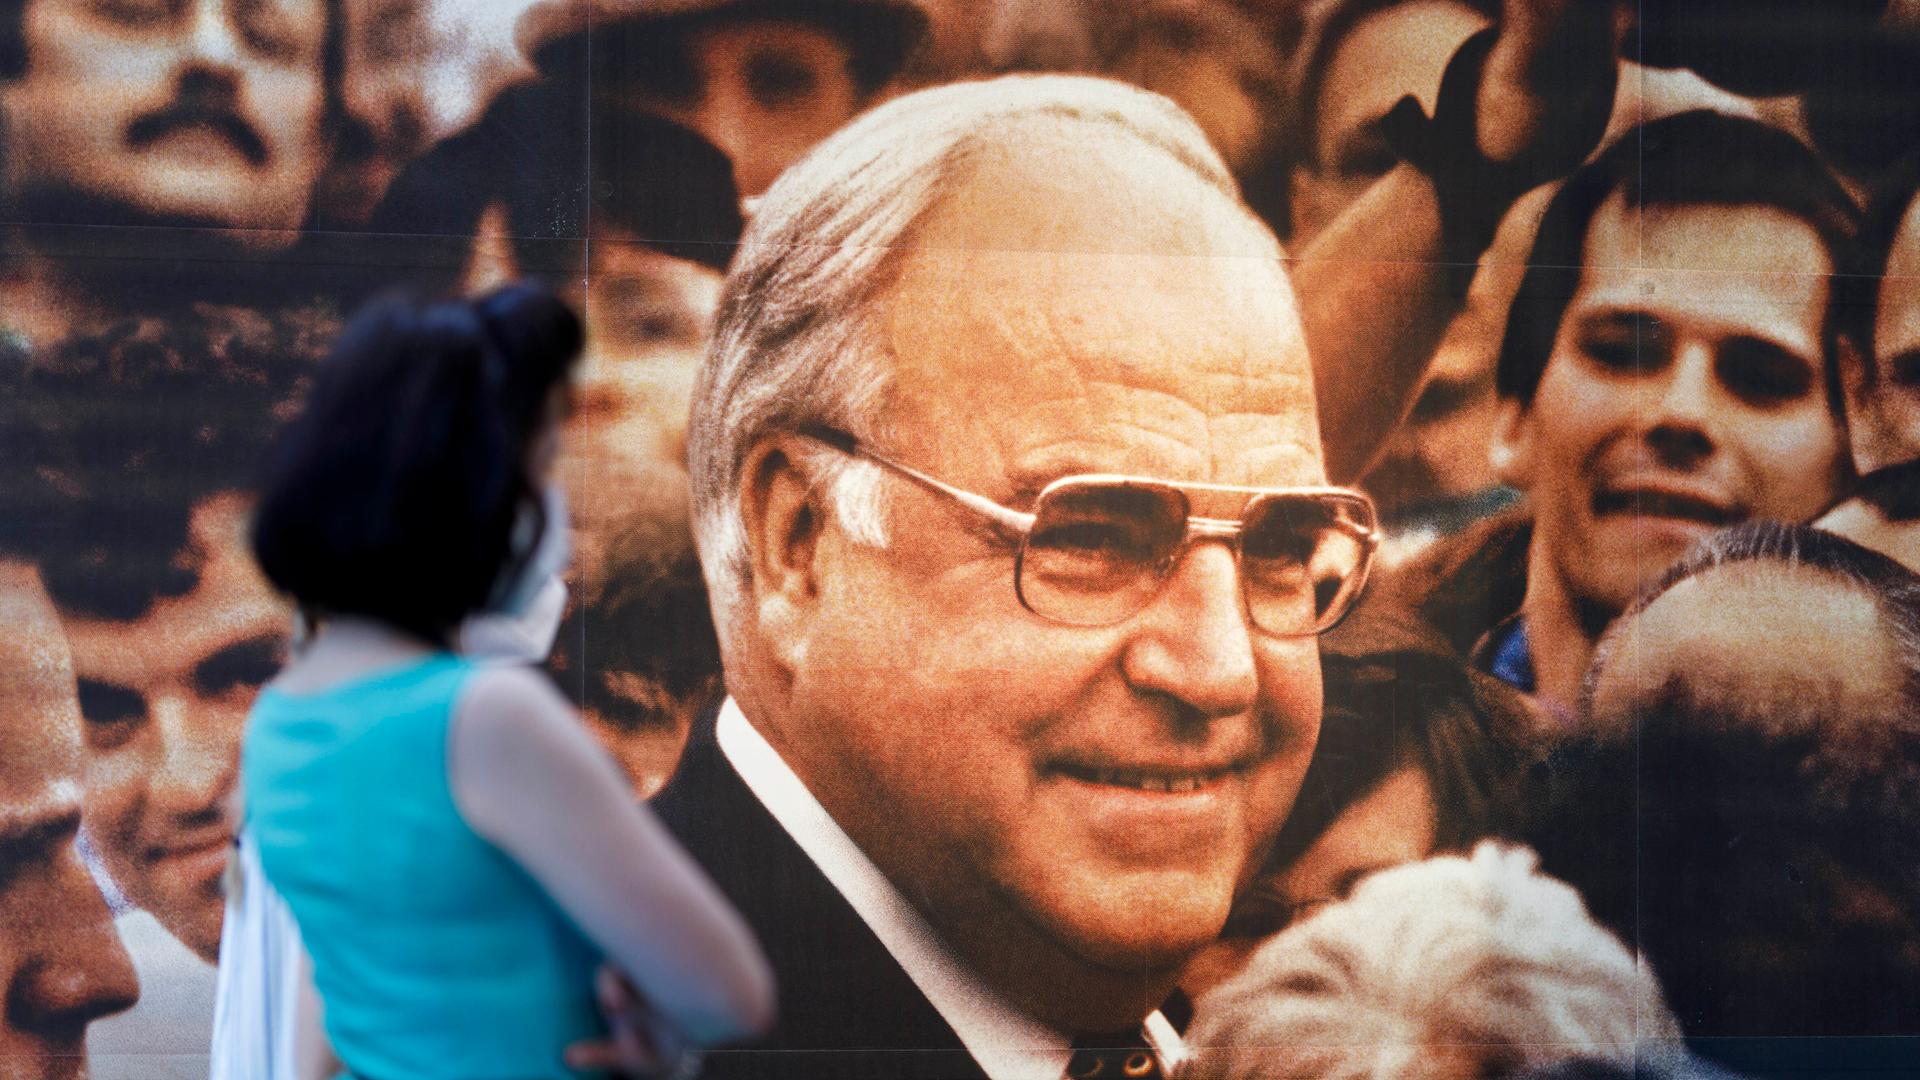 Eine Frau vor einem Wahlplakat mit Helmut Kohl in der Ausstellung "Wähl mich! Parteien plakatieren", die 2021 im Haus der Geschichte in Bonn zu sehen war.